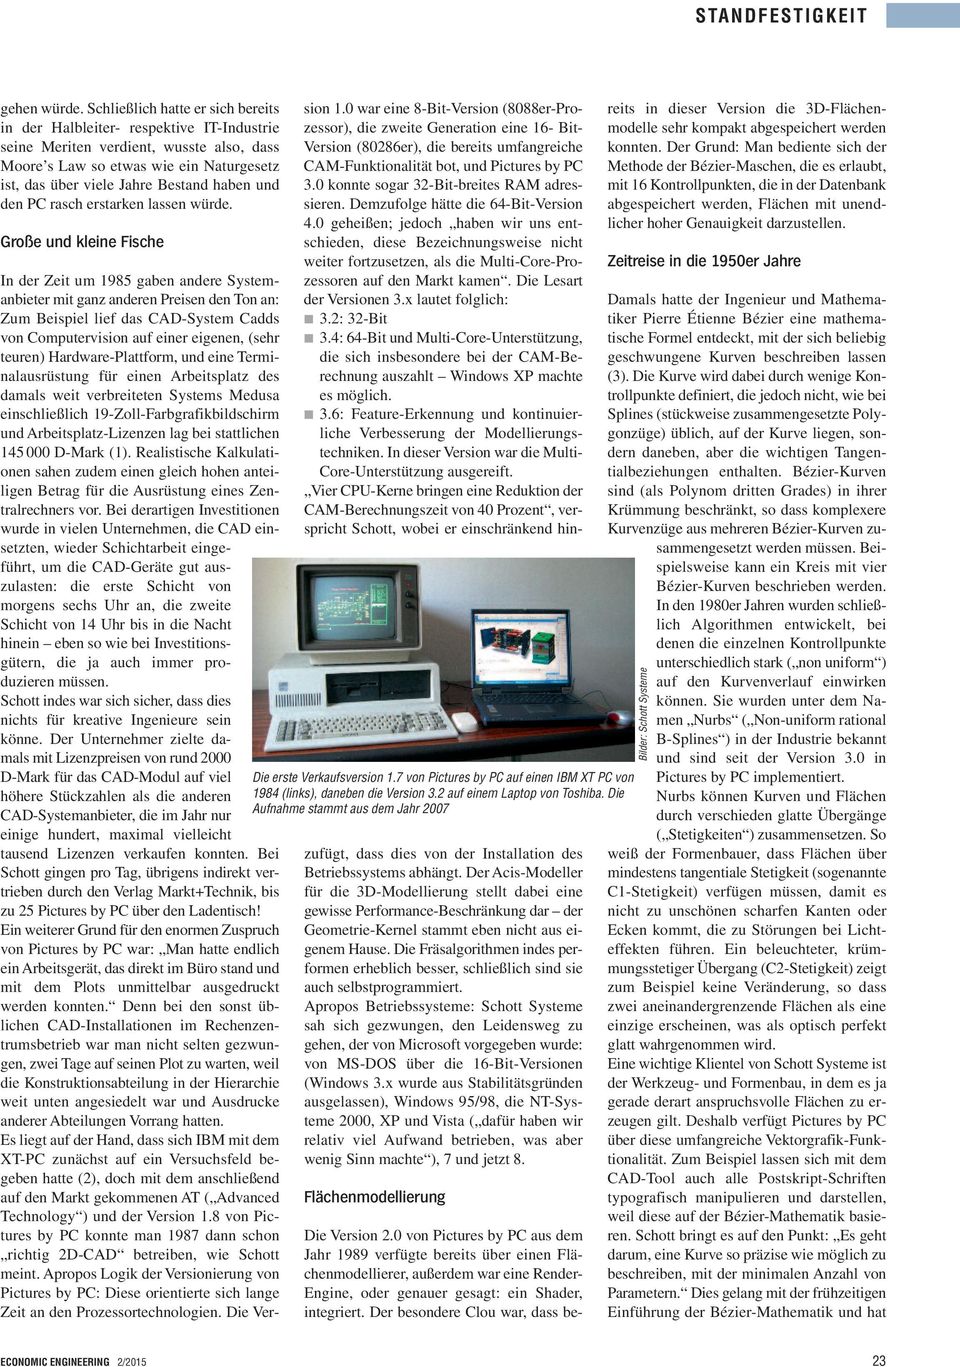 und den PC rasch erstarken lassen würde. Große und kleine Fische Die erste Verkaufsversion 1.7 von auf einen IBM XT PC von 1984 (links), daneben die Version 3.2 auf einem Laptop von Toshiba.